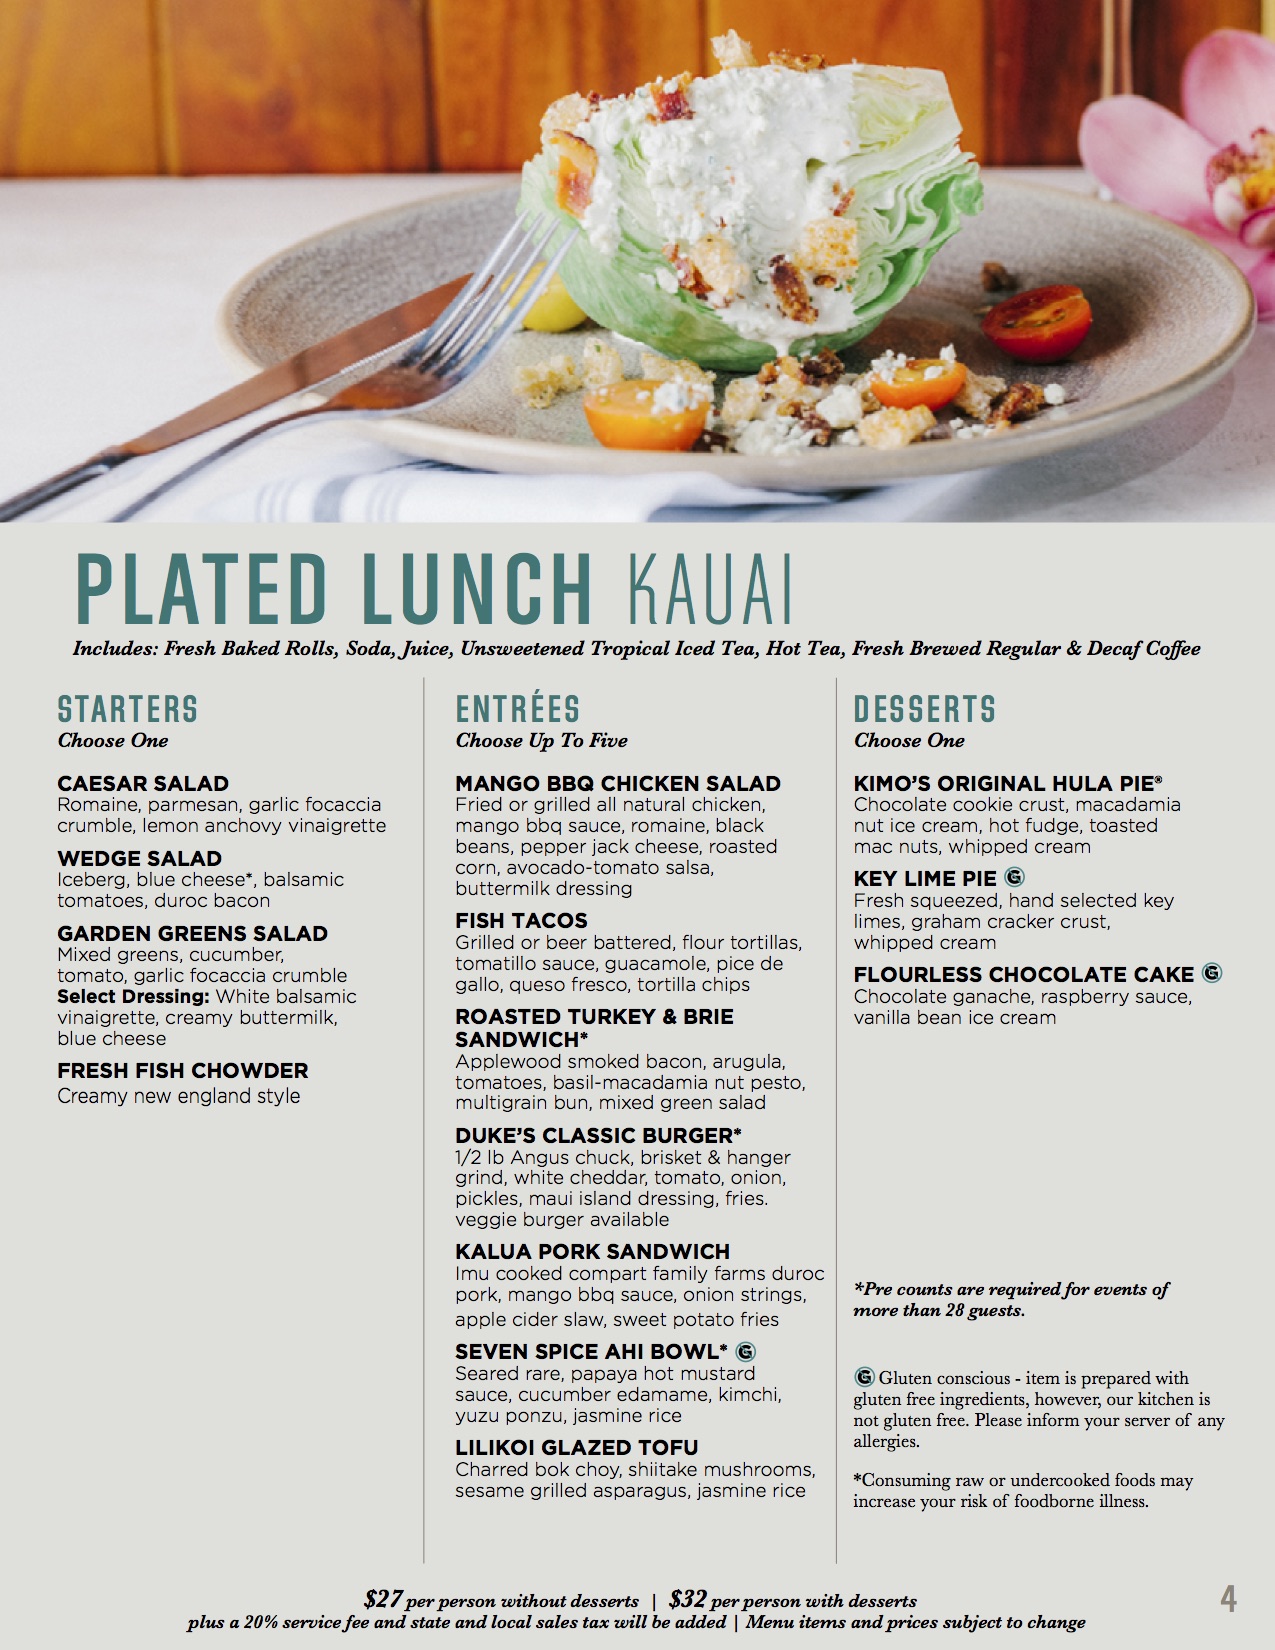 banquet menu - plate lunch kauai